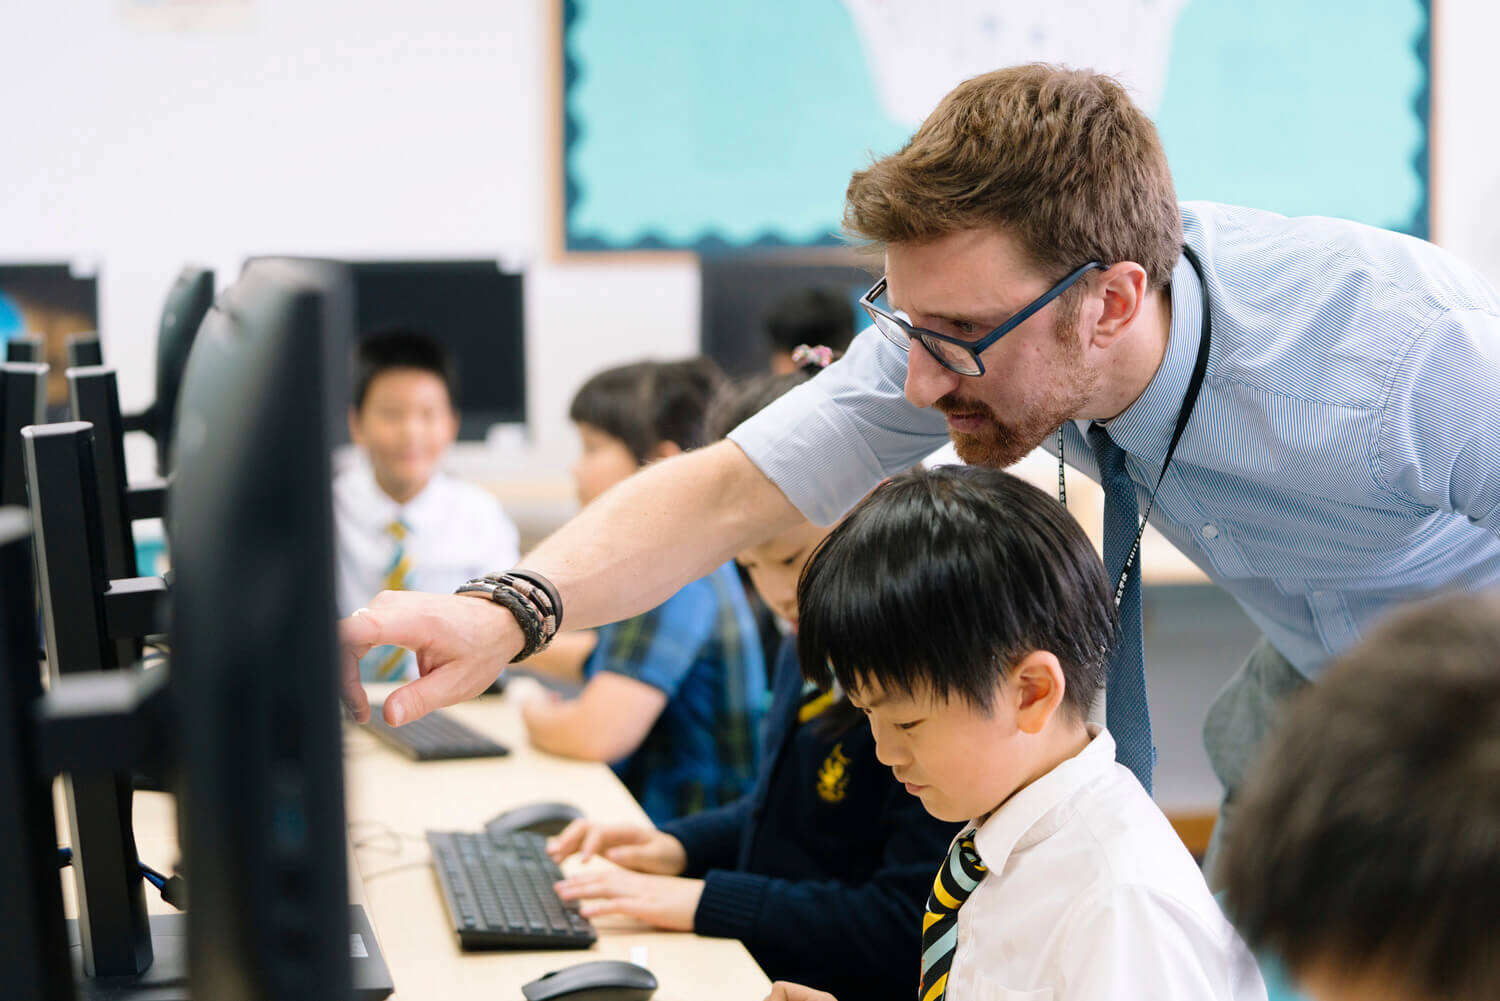 上海惠立双语学校教育模式